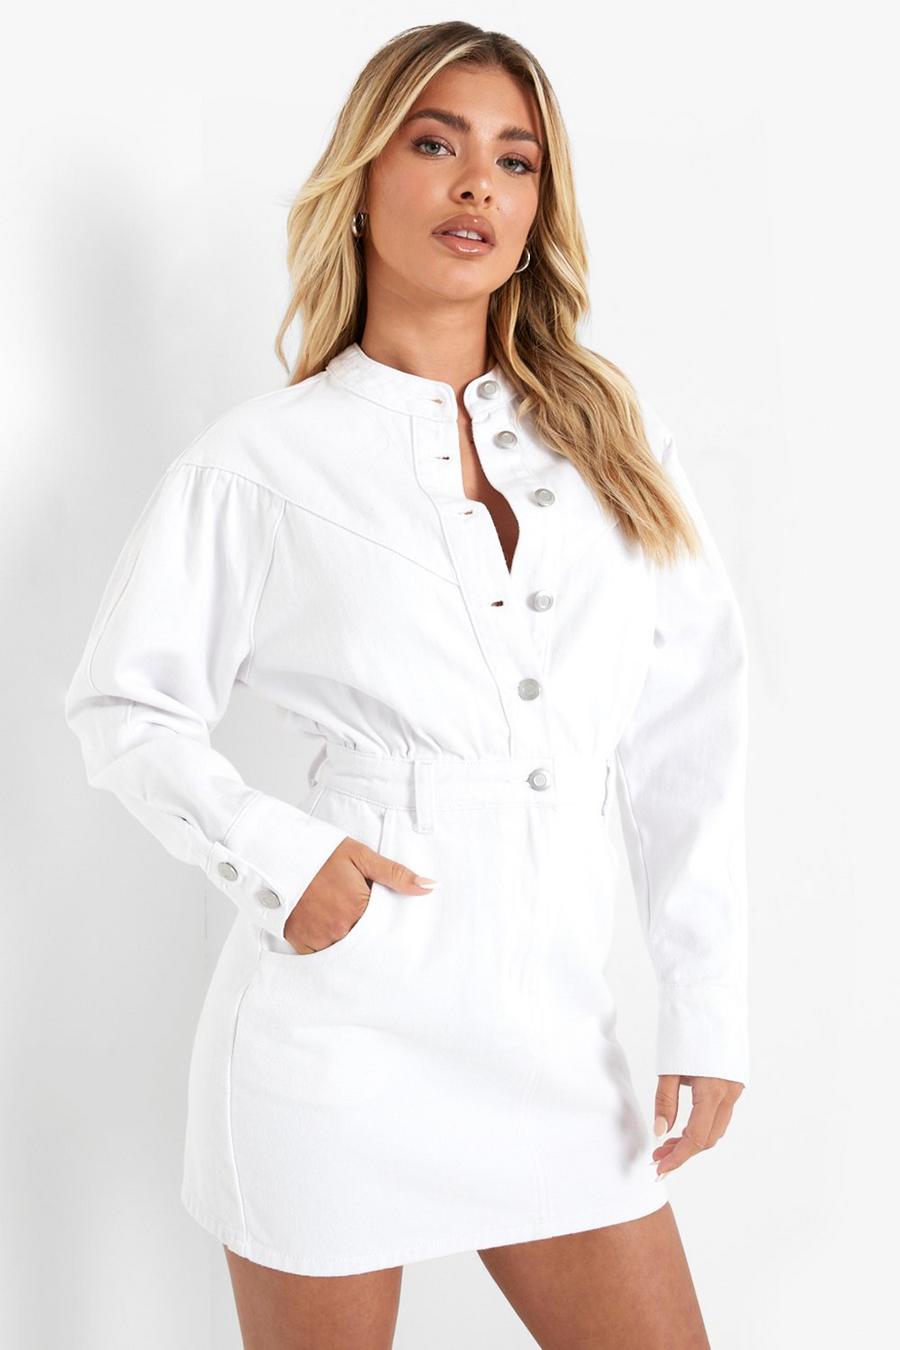 לבן blanco שמלה מבד ג'ינס עם שרוולים ארוכים וכפתורים בחזית